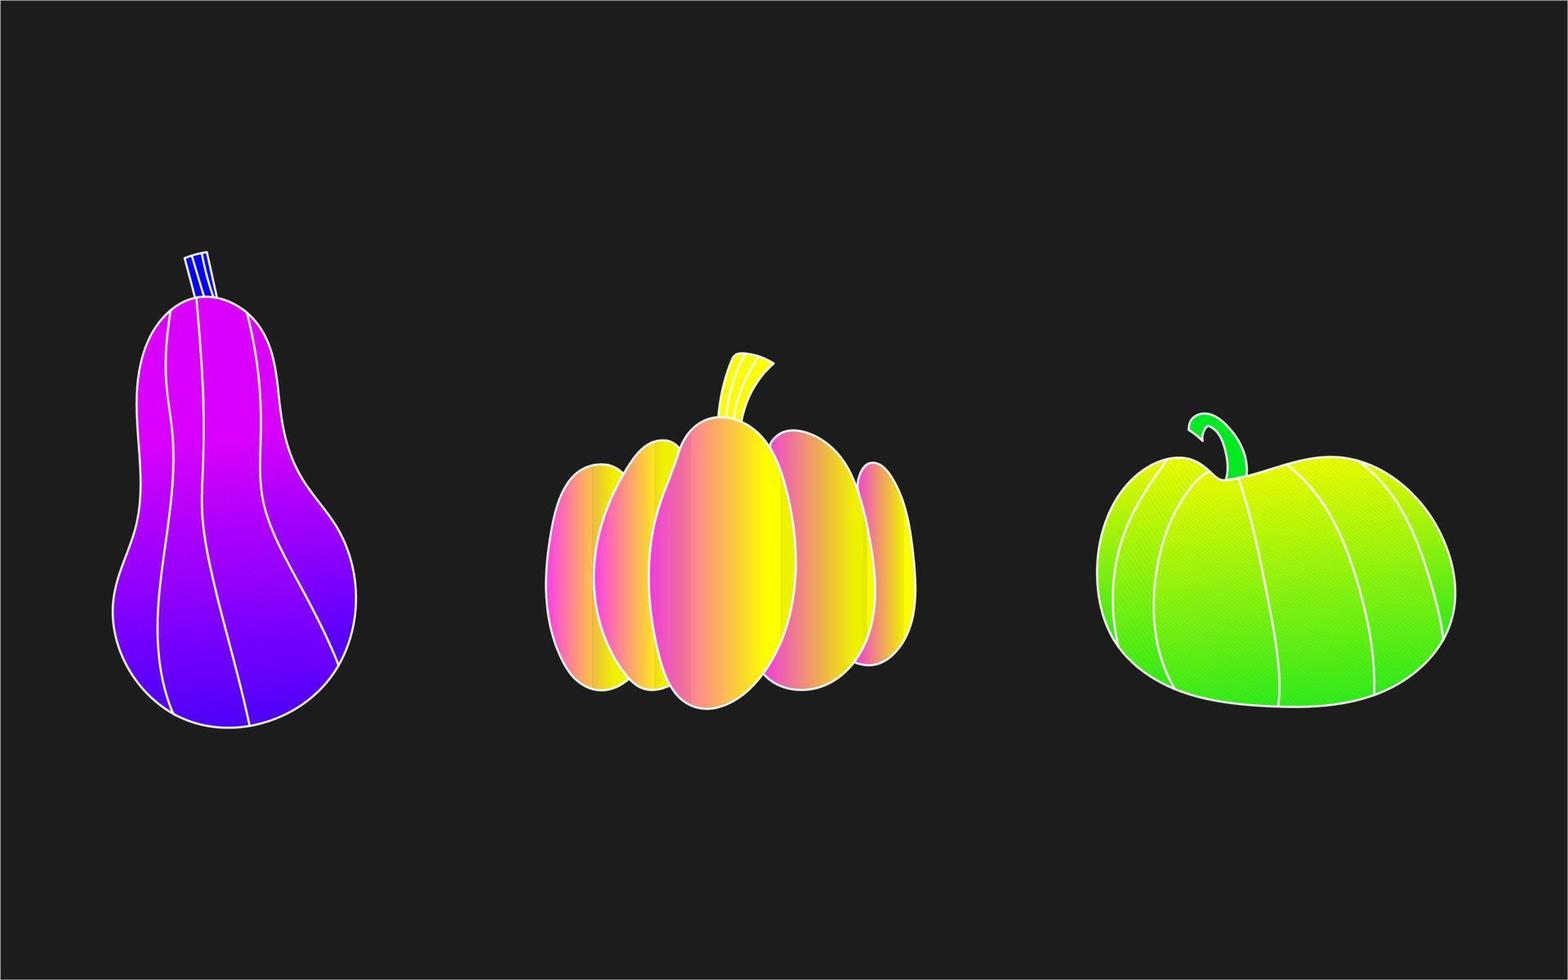 Set of Halloweem acid pumpkins. Three pumpkins in psyhedelic colors. vector